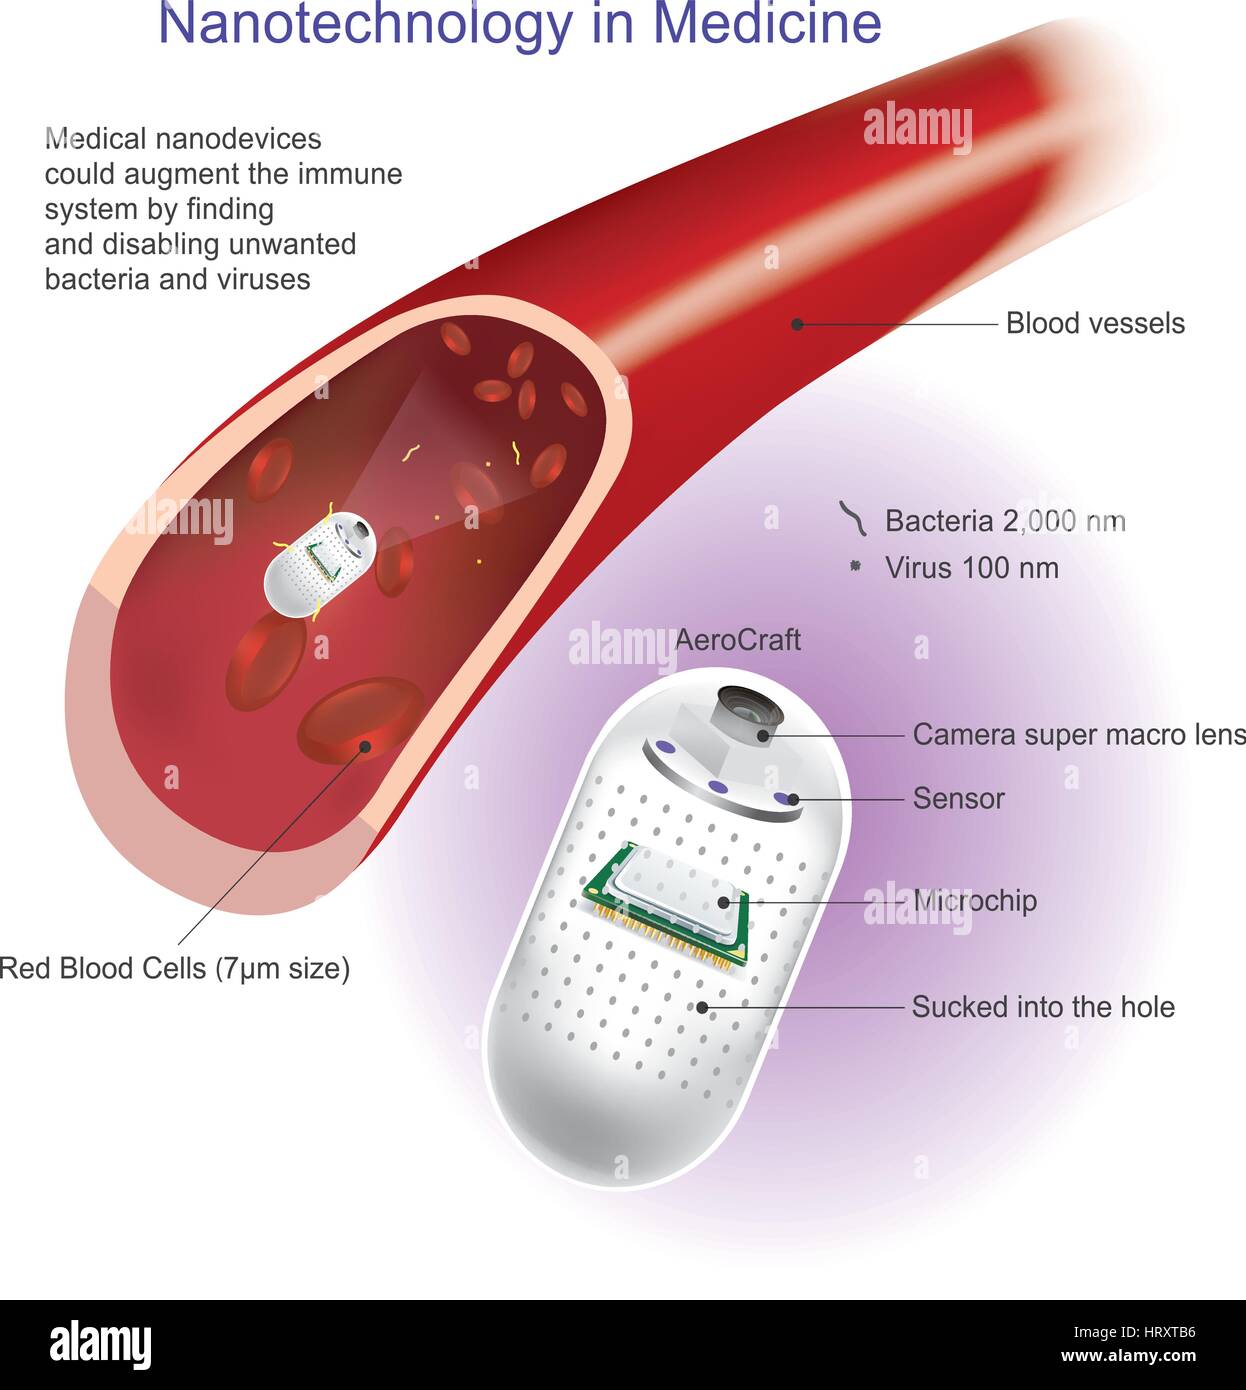 (Angioplastica o angioplastica con palloncino) è una procedura endovascolare per ampliare ristretto o arterie ostruite o vene, tipicamente per trattare Antonio arteriosa Illustrazione Vettoriale